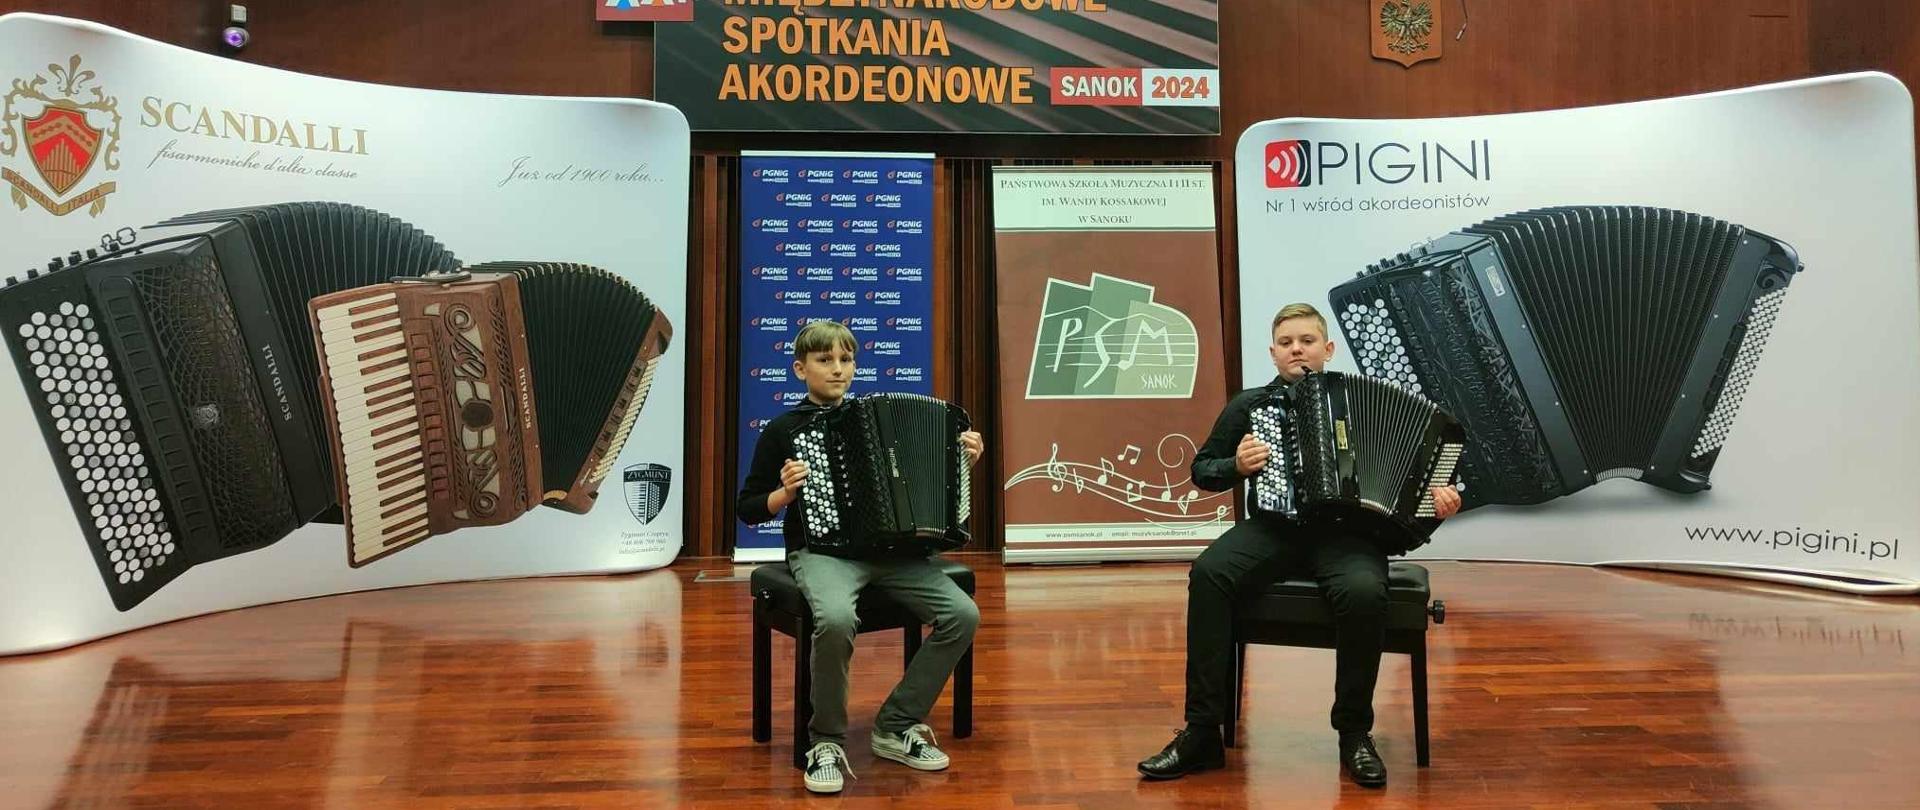 Zdjęcie duetu akordeonowego w czasie prezentacji konkursowej. Uczniowie siedzą z instrumentami na krzesłach na scenie - w tle banery dwóch wiodących marek produkujących akordeony